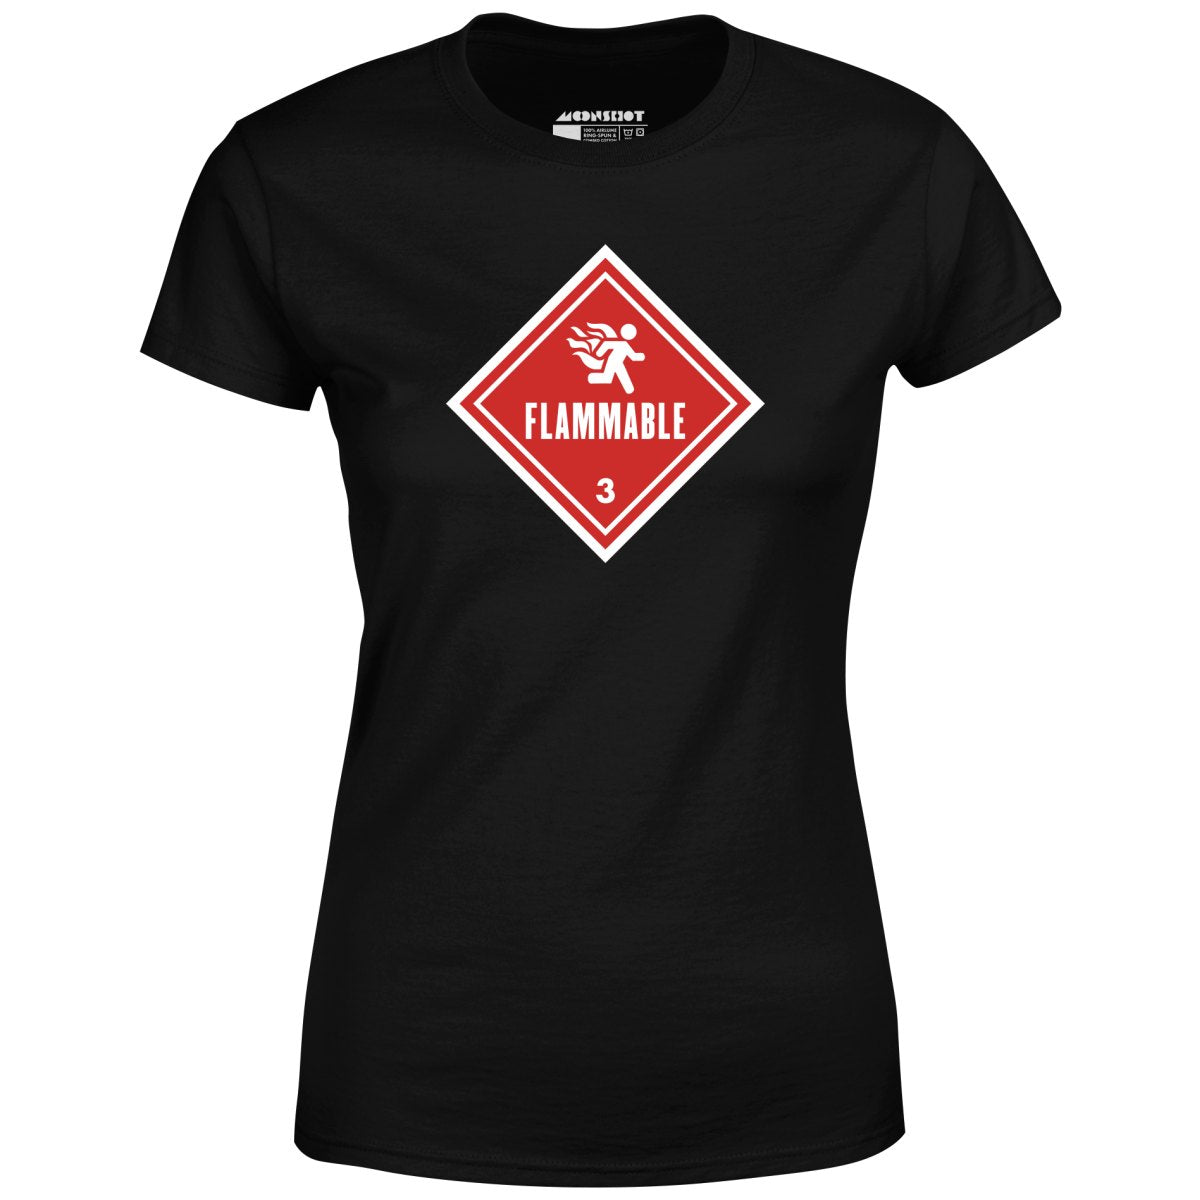 Flammable Human Warning - Women's T-Shirt